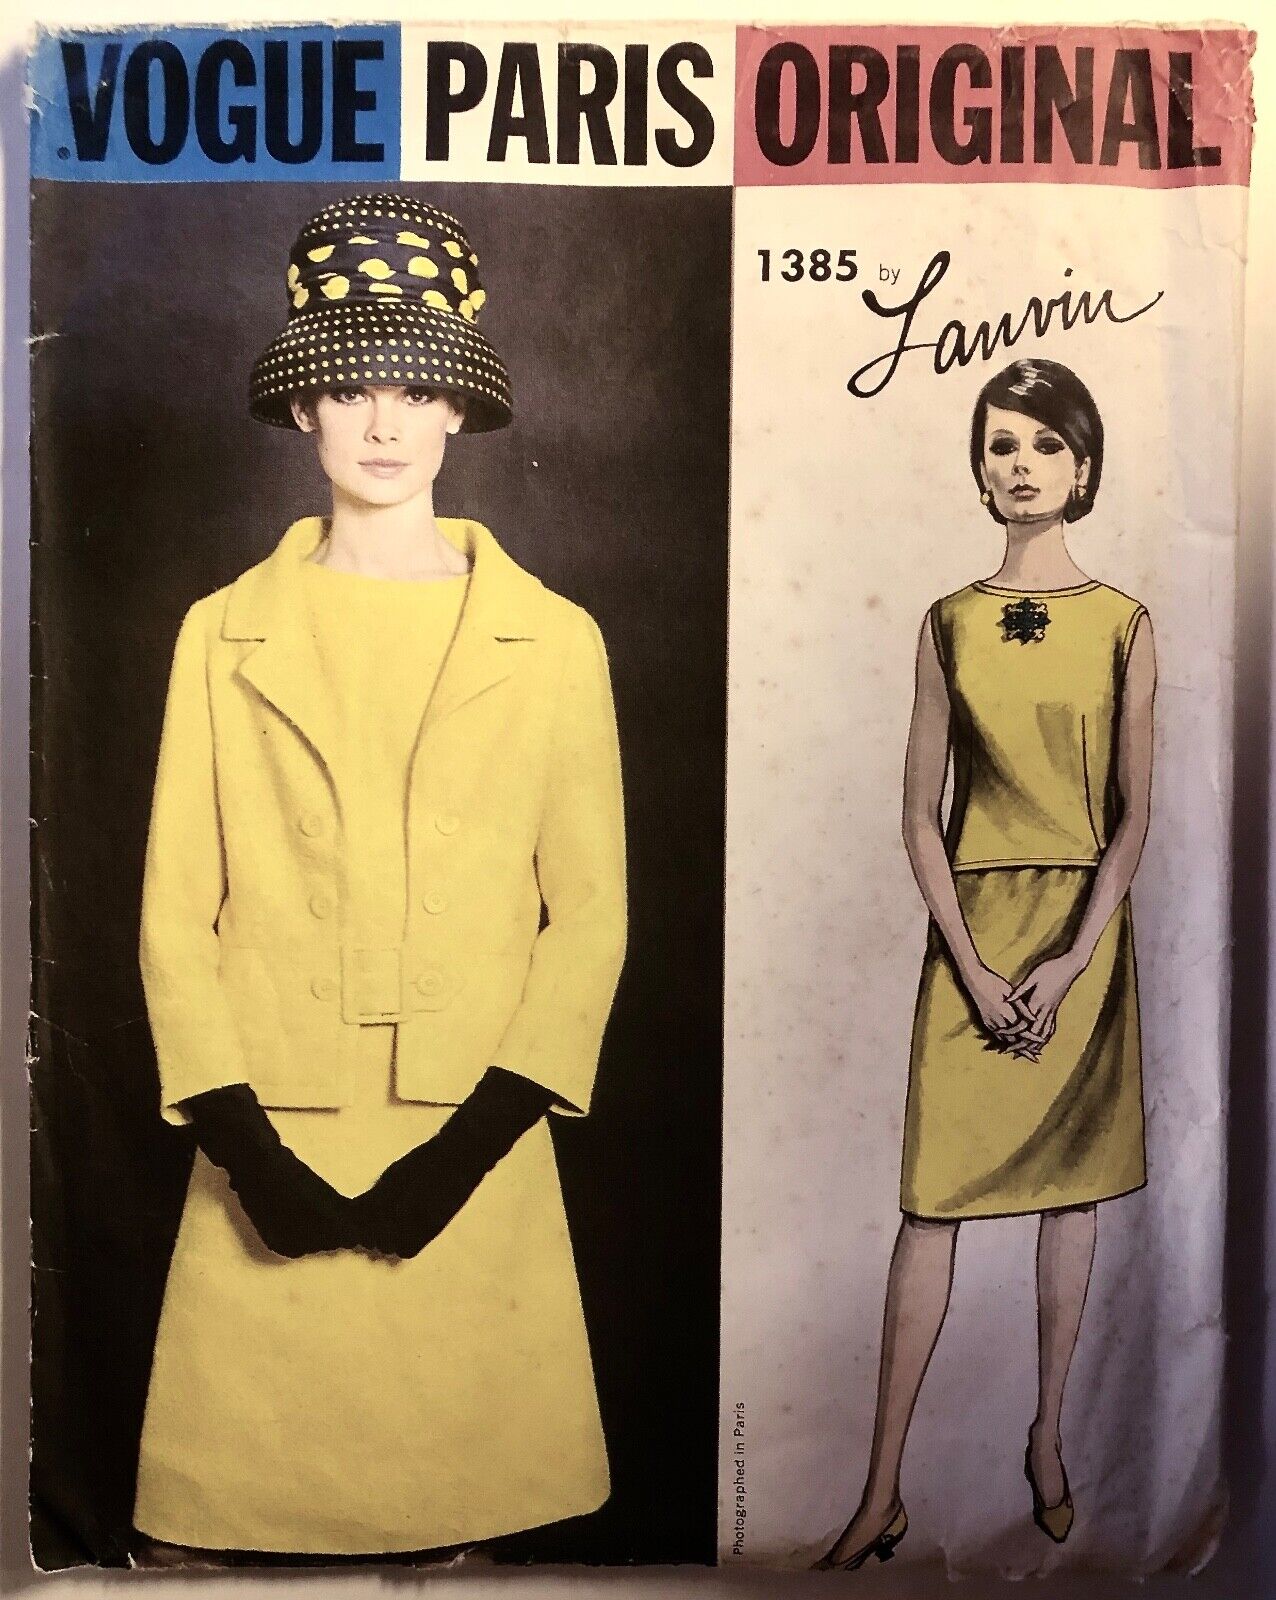 VOGUE Paris Original Sewing Pattern no. 1385 size 14, 1960s by Lanvin, 34 bust